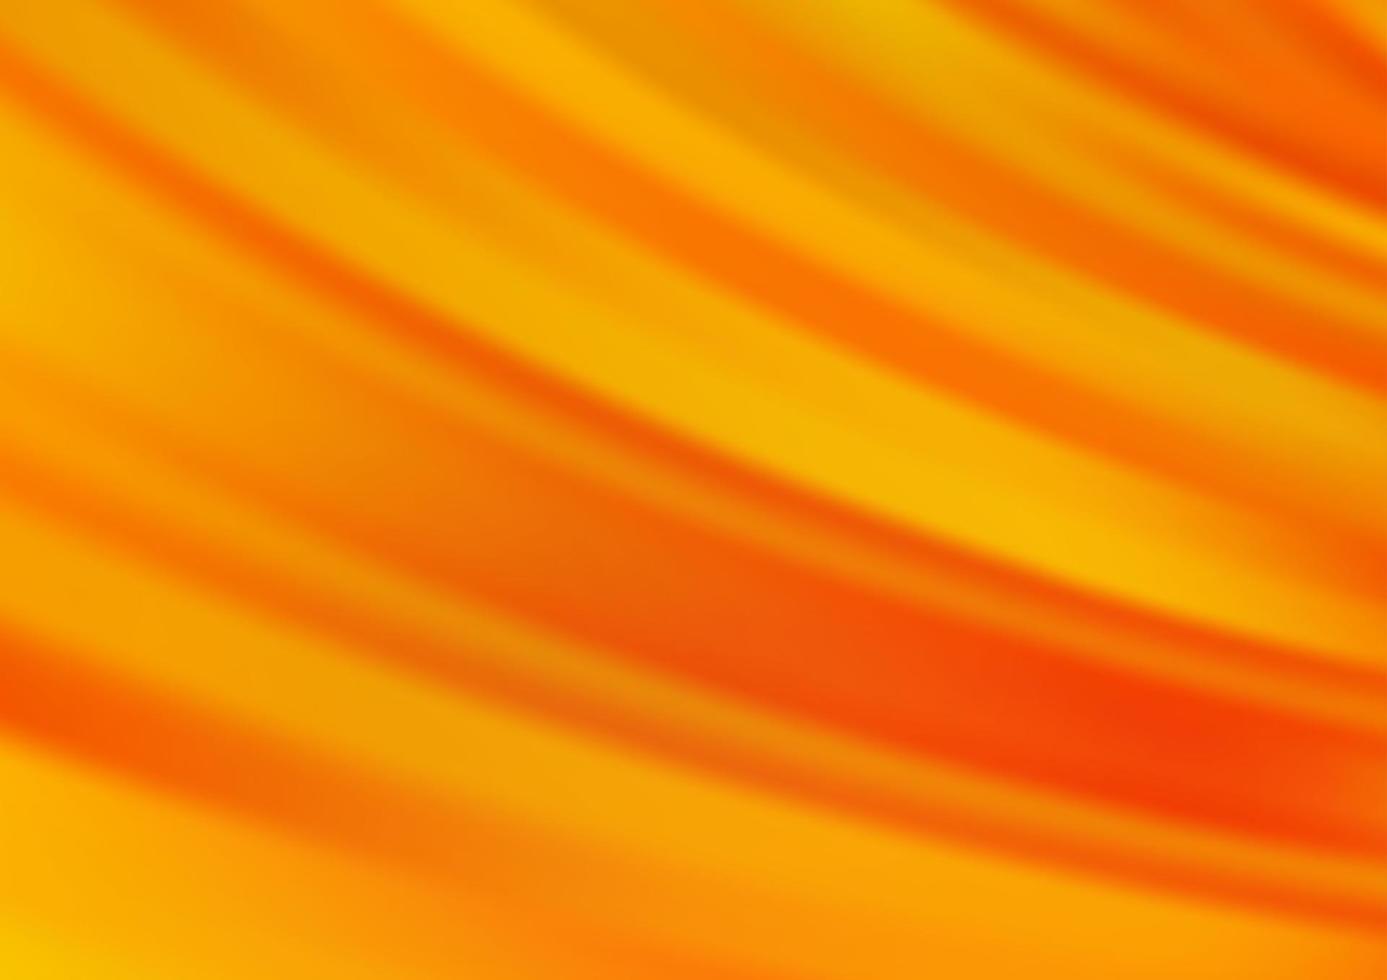 trama vettoriale arancione chiaro con linee colorate.